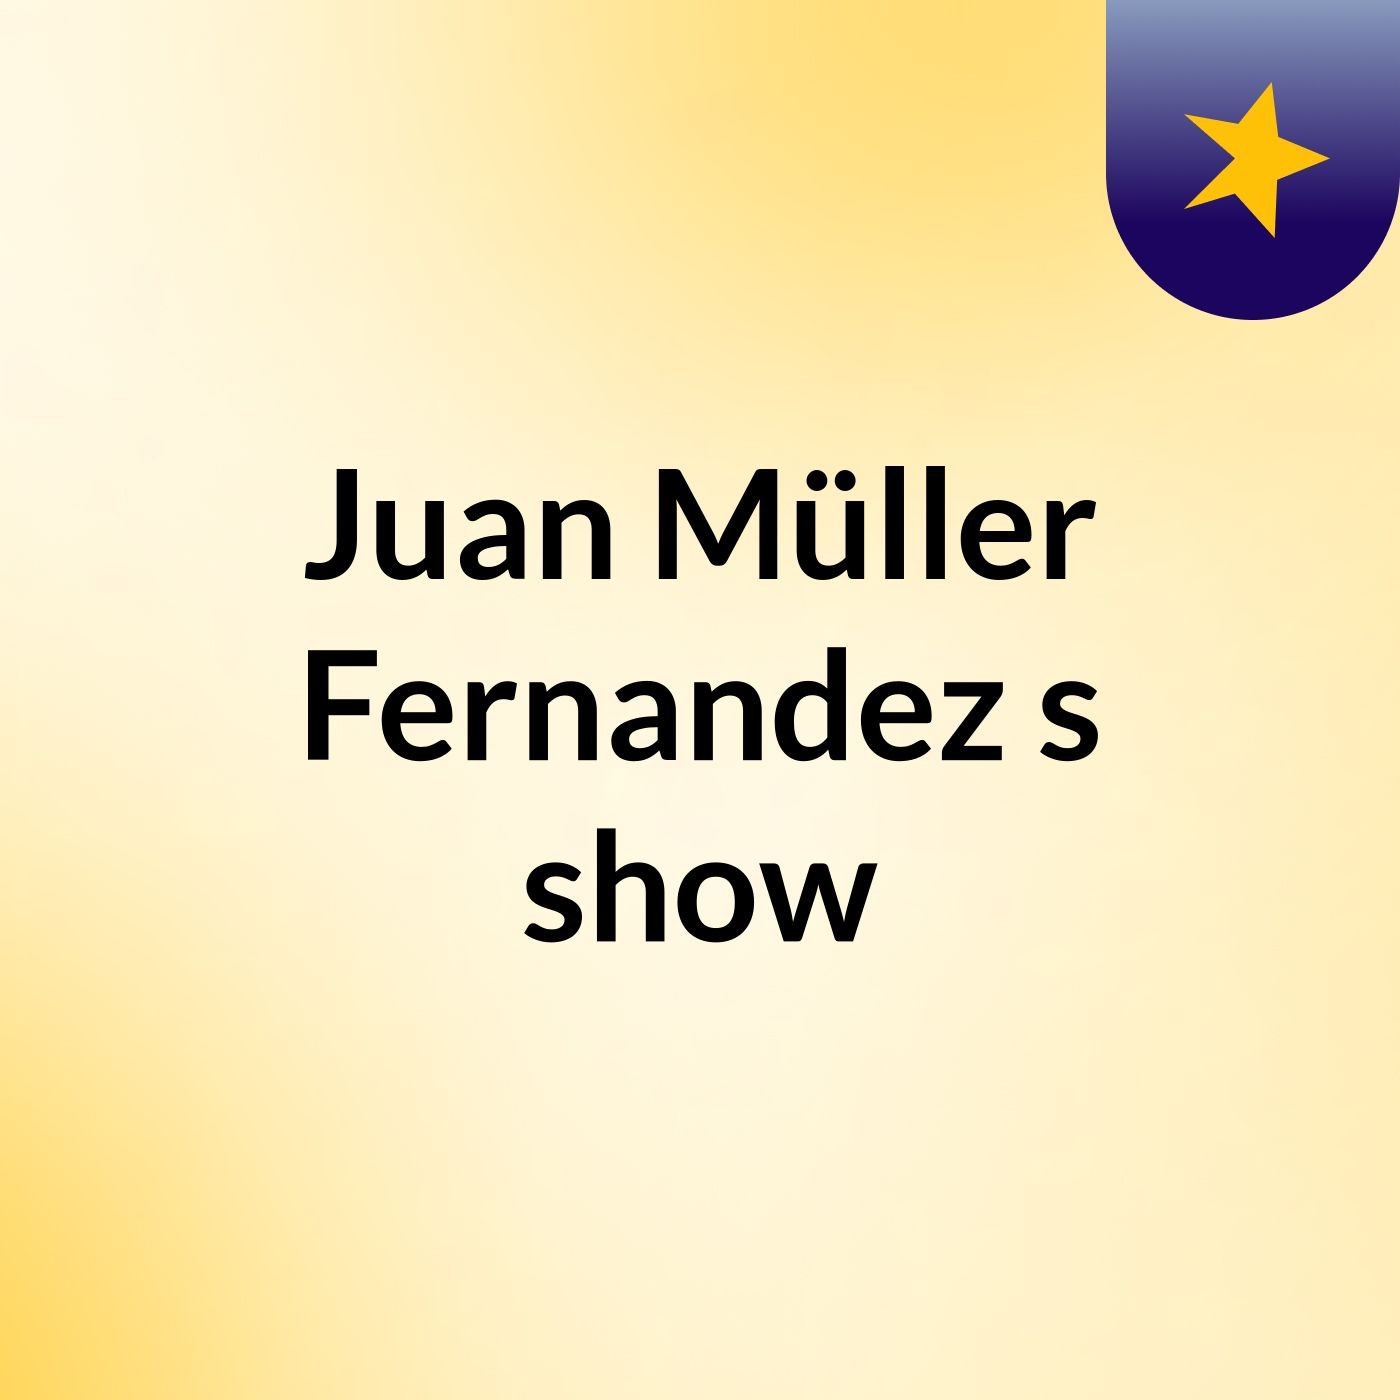 Juan Müller Fernandez's show